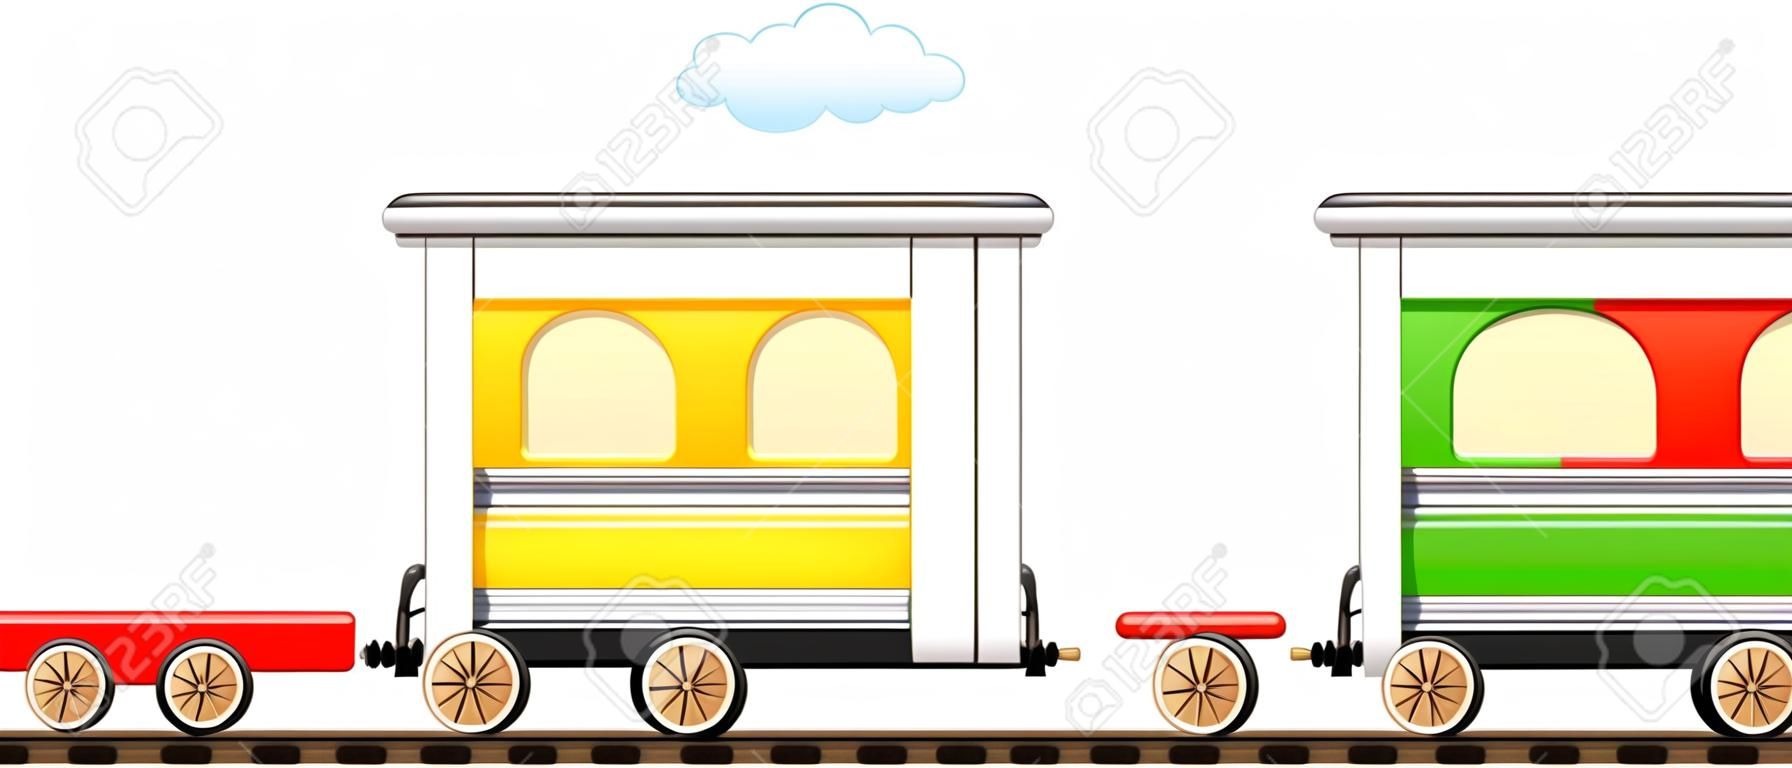 cartoon geïsoleerde schattige trein met kleurrijke koets in de spoorweg